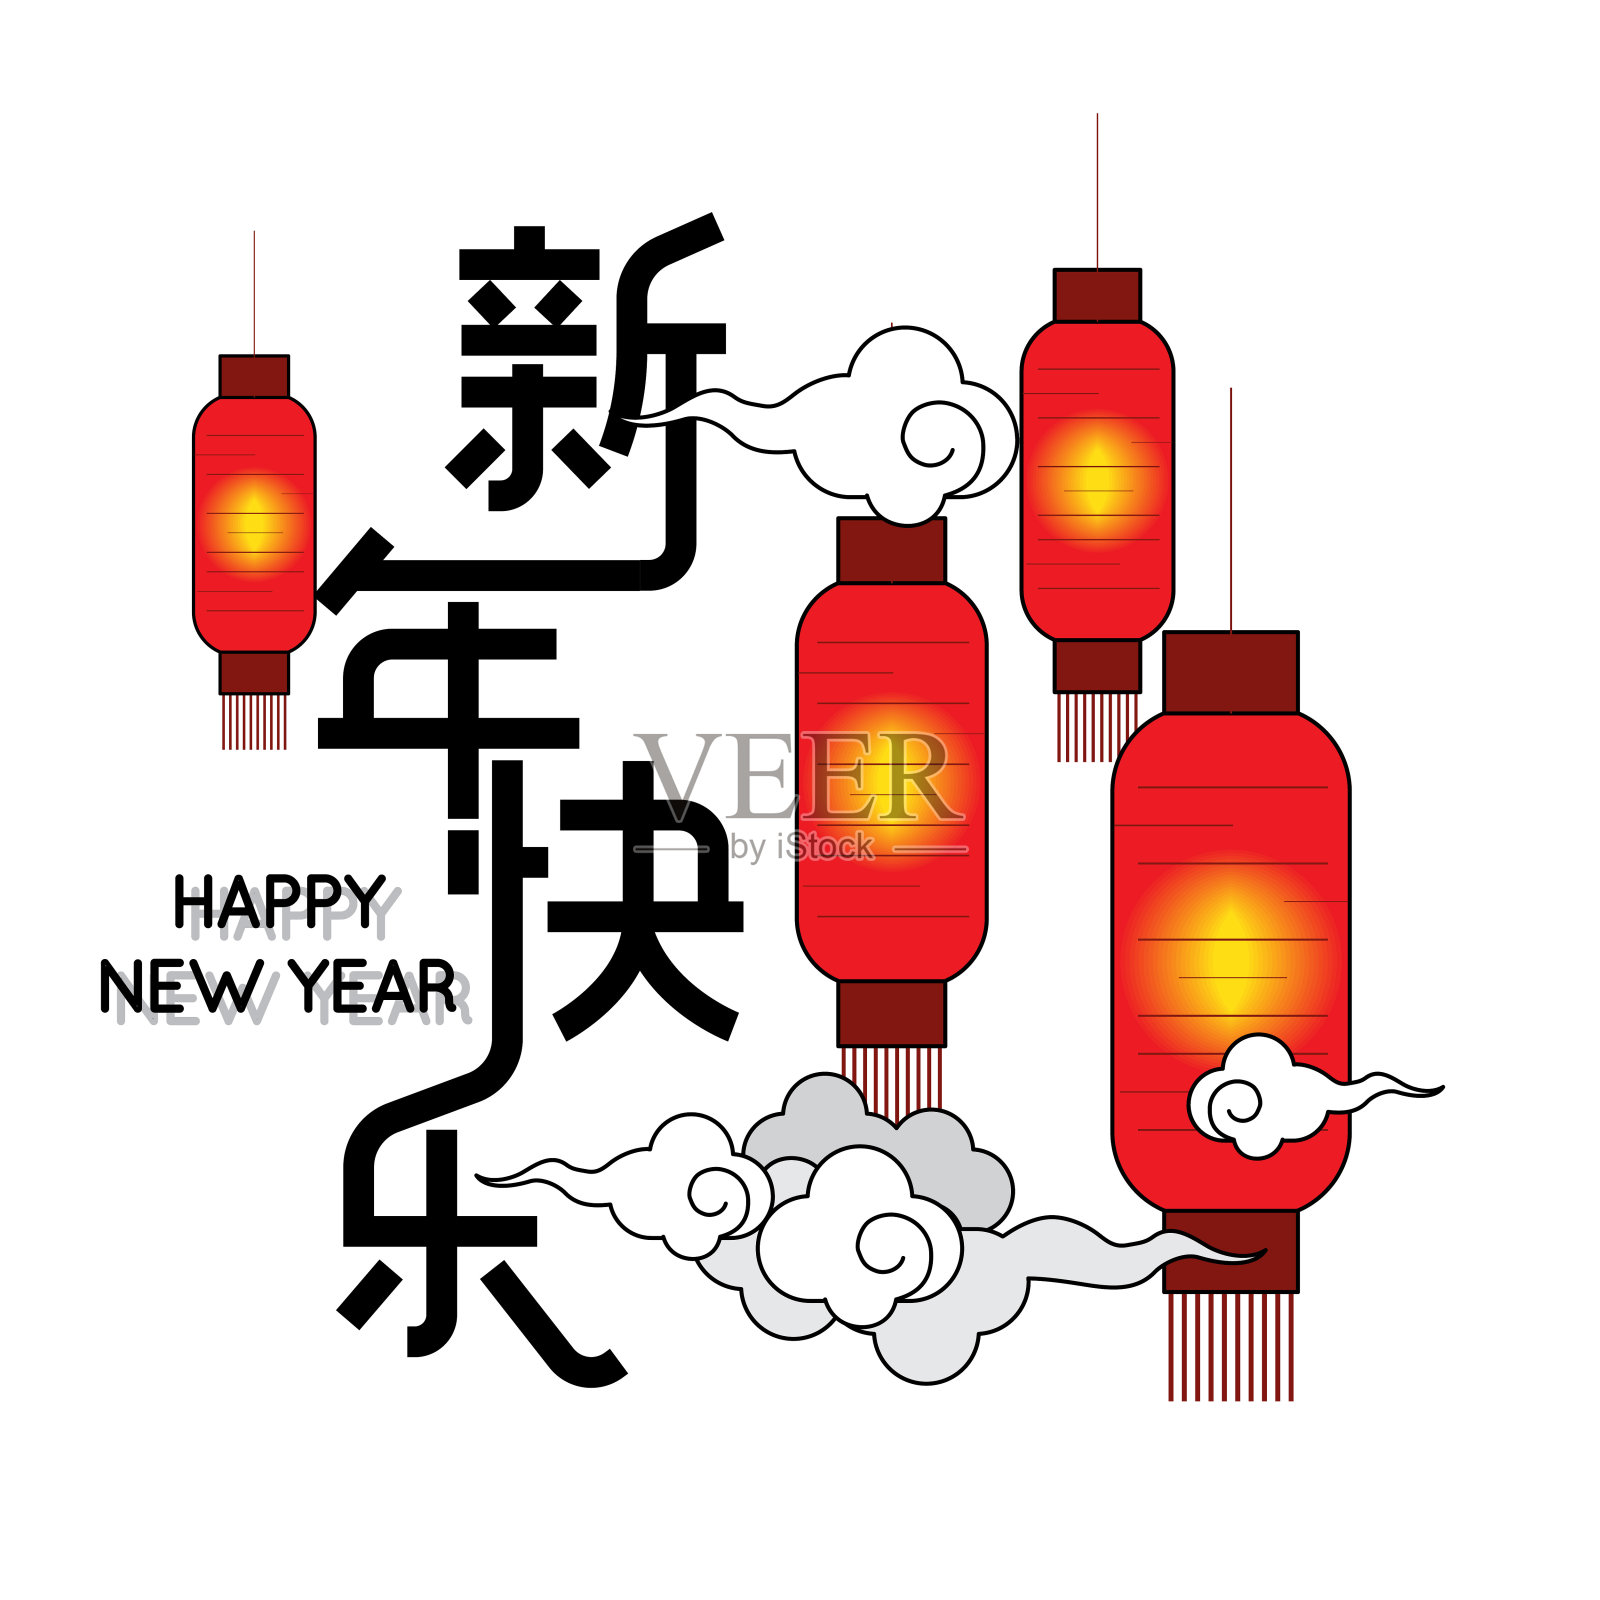 春节快乐的背景是彩灯和云。中文翻译:新年快乐设计模板素材